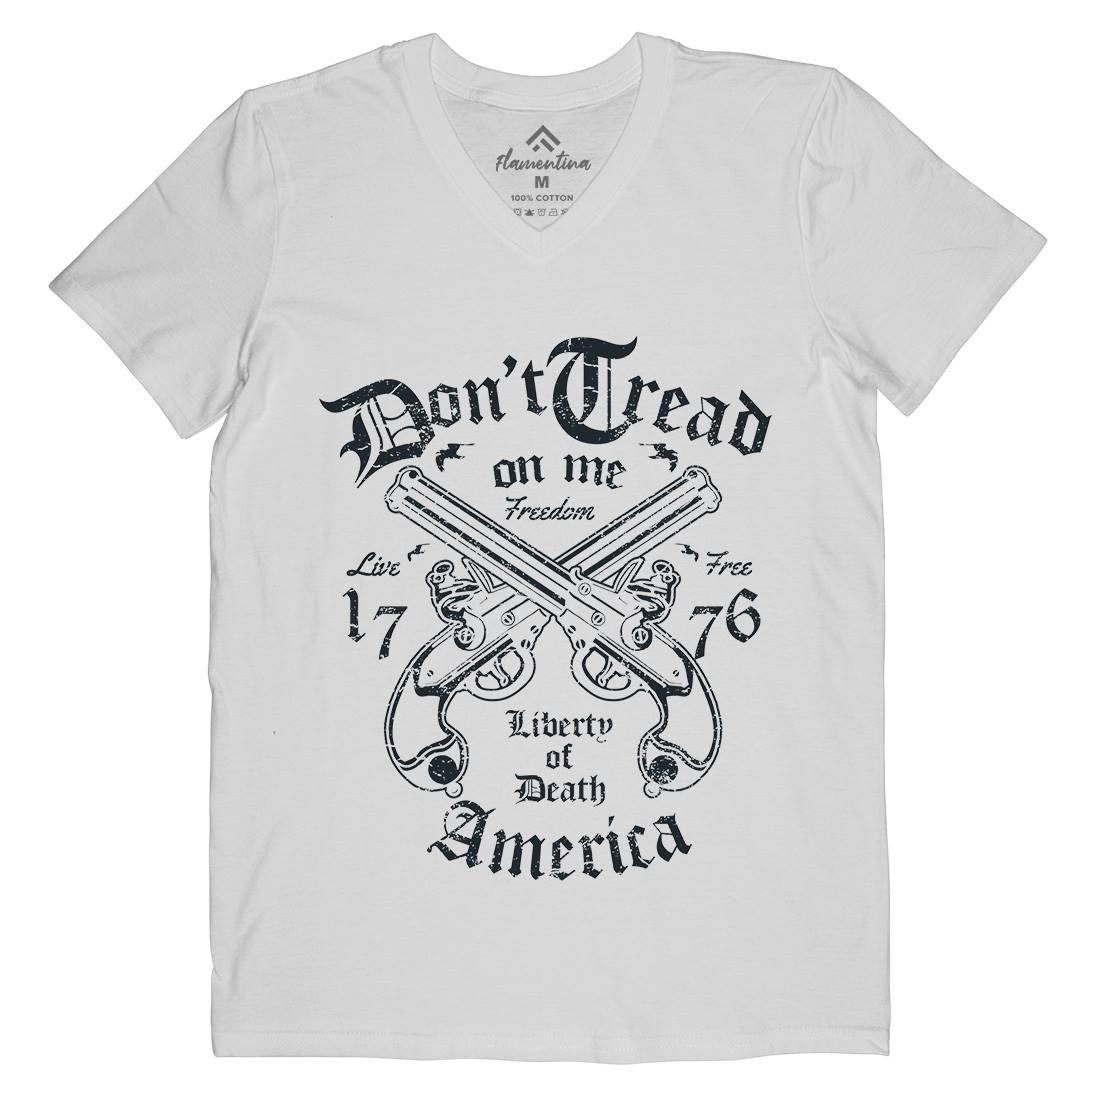 Liberty Of Death Mens V-Neck T-Shirt American A084